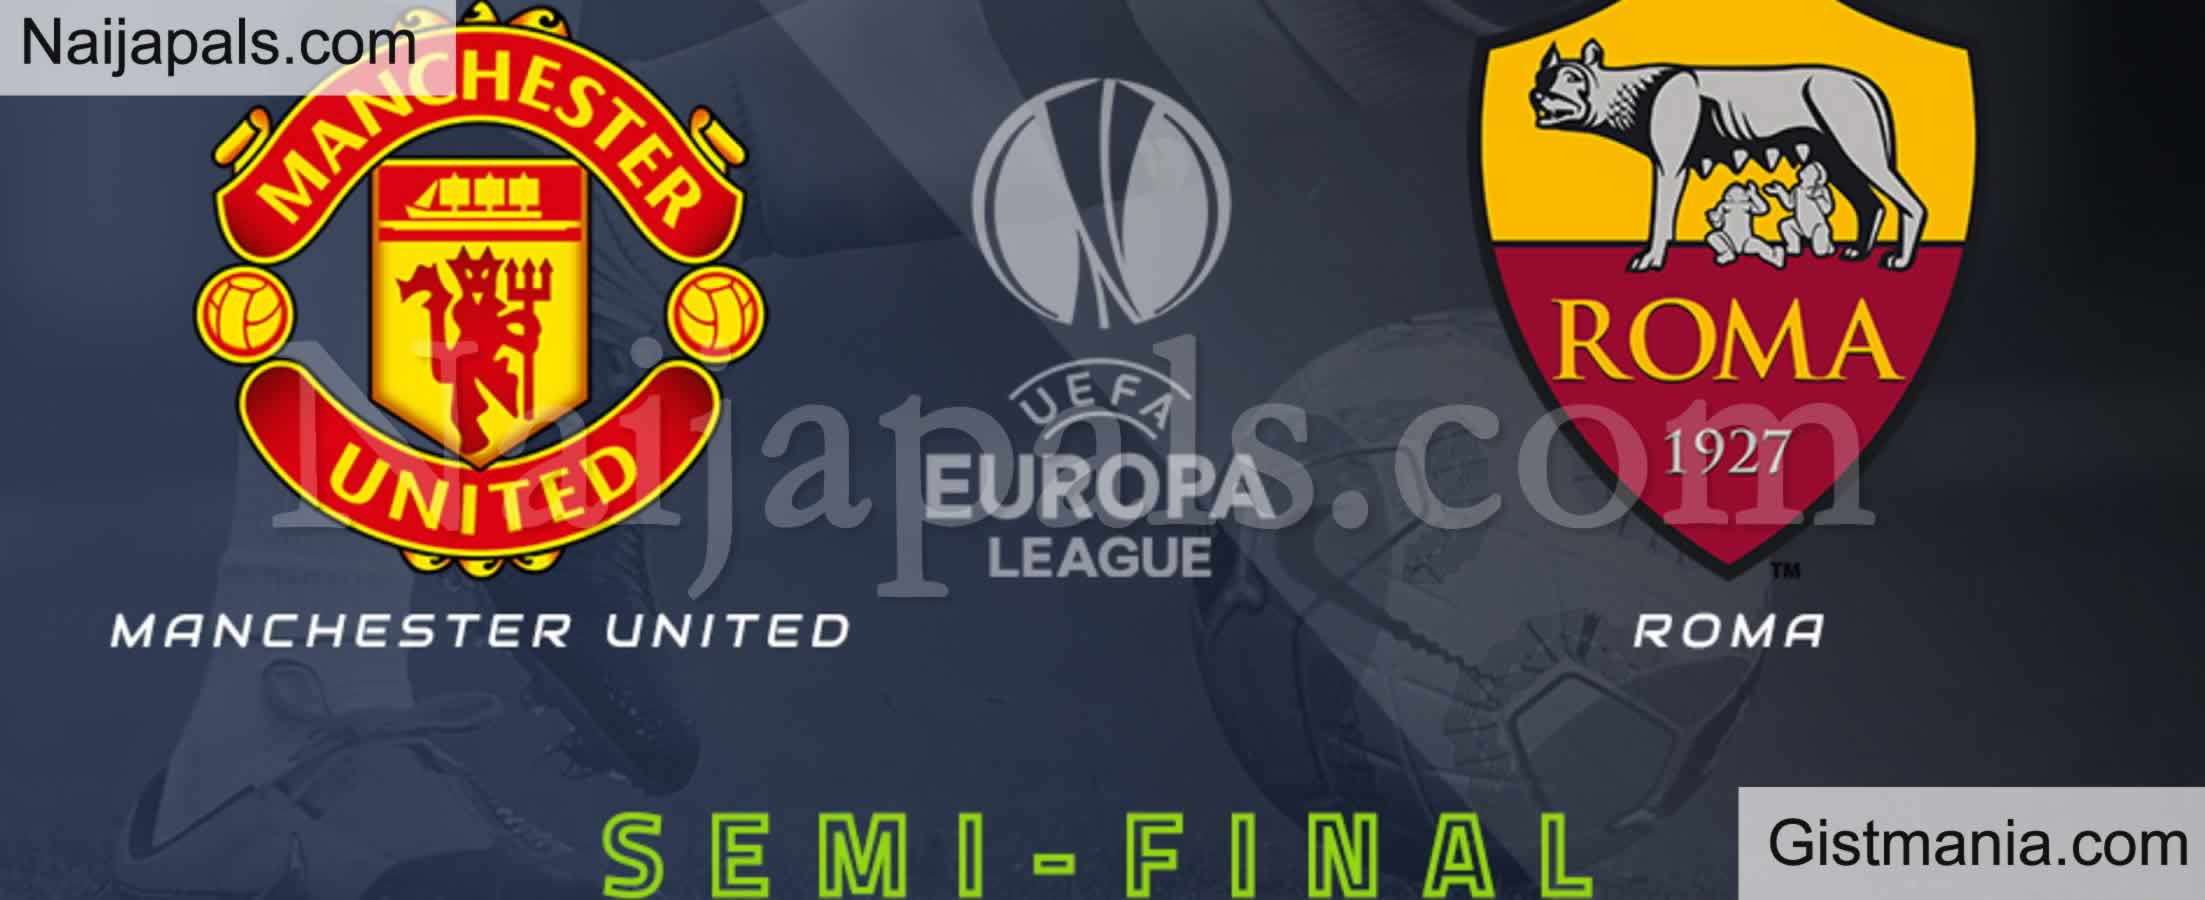 Manchester United v Roma : UEFA Europa League Match, Team ...